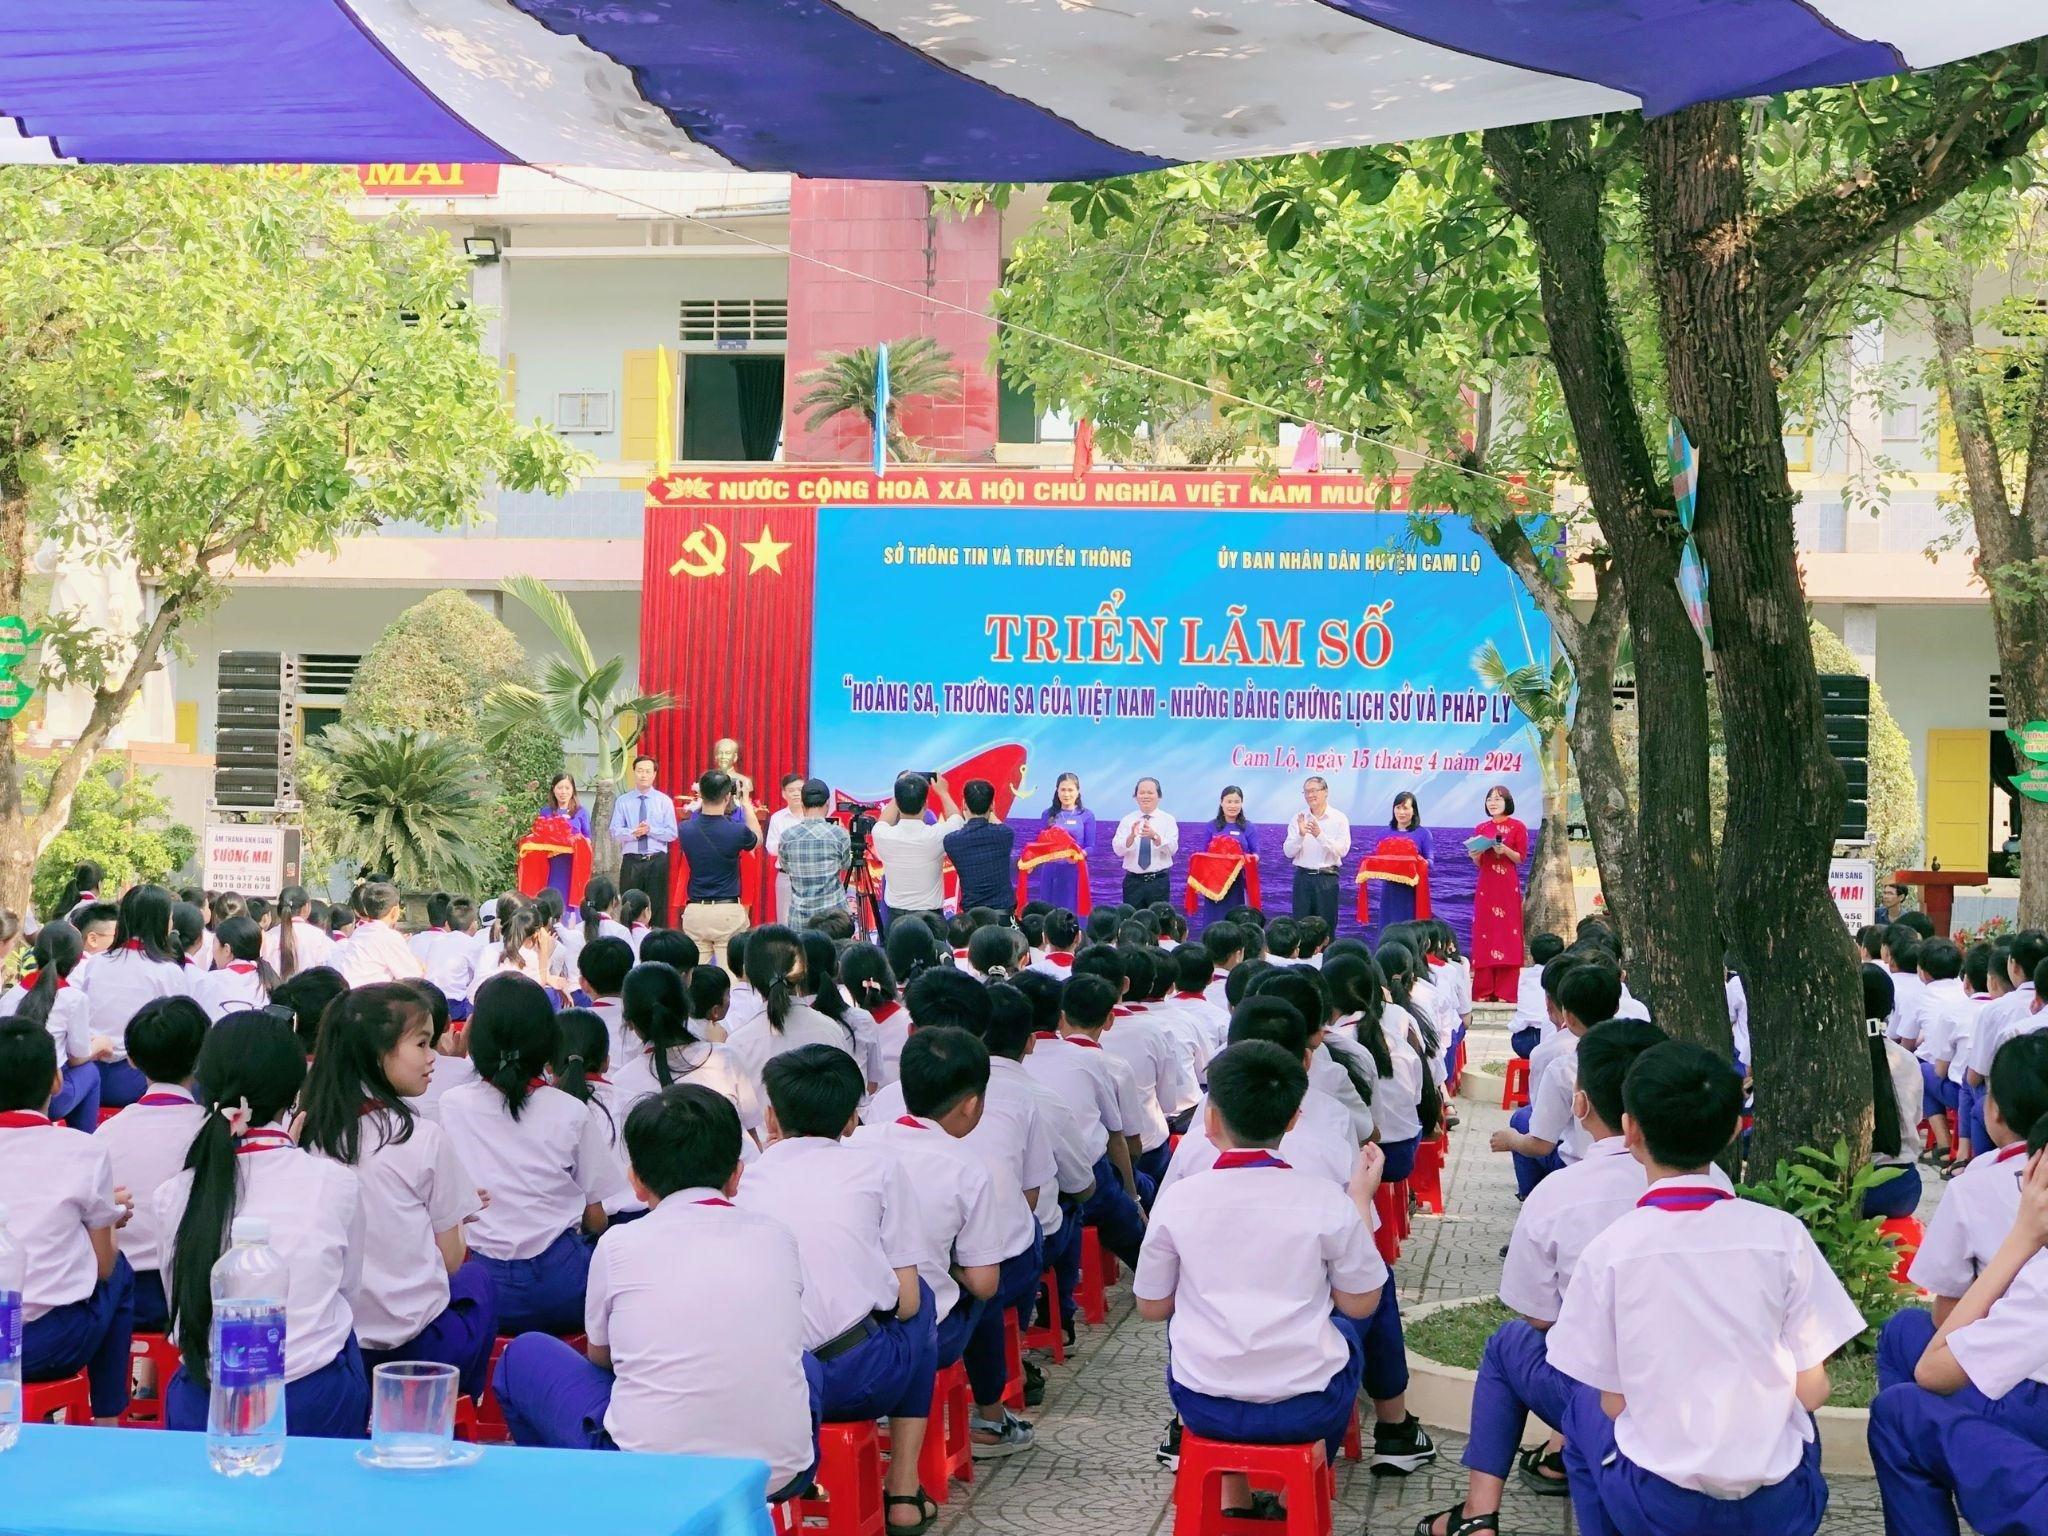 Chủ quyền của Việt Nam đối với hai quần đảo Hoàng Sa và Trường Sa của Việt Nam - Tổ quốc nhìn từ...